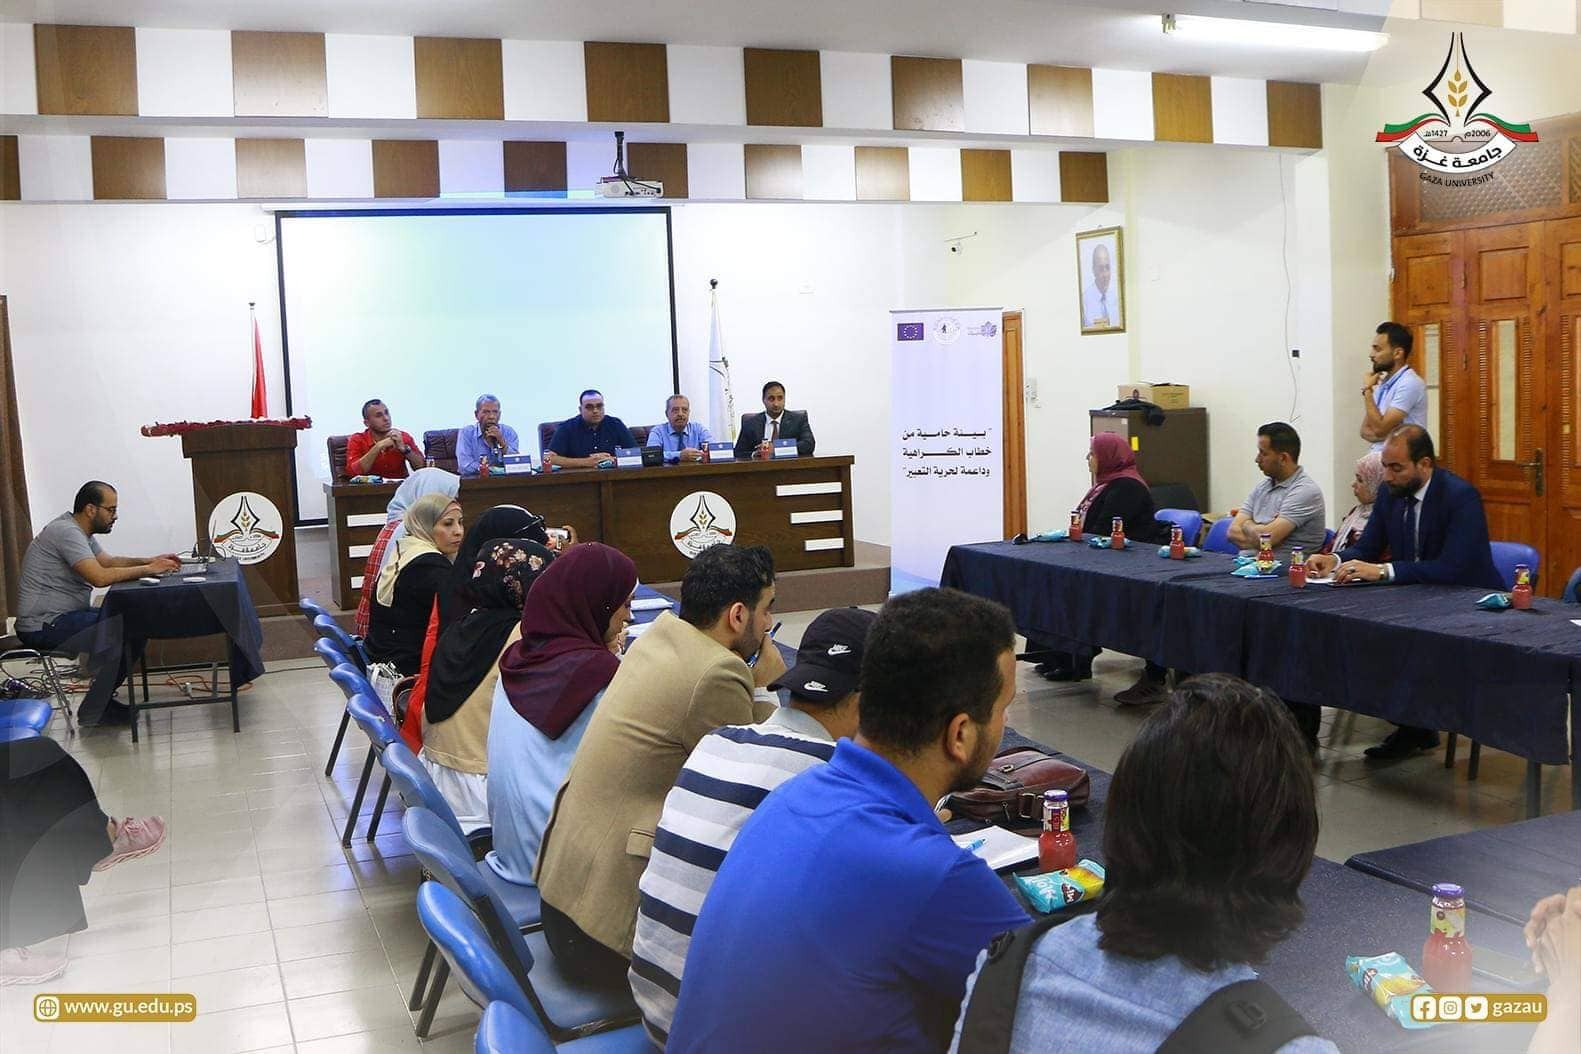 بالصور: جامعة غزة تنظّم ندوة حول أخلاقيات الكتابة للعلاقات العامة